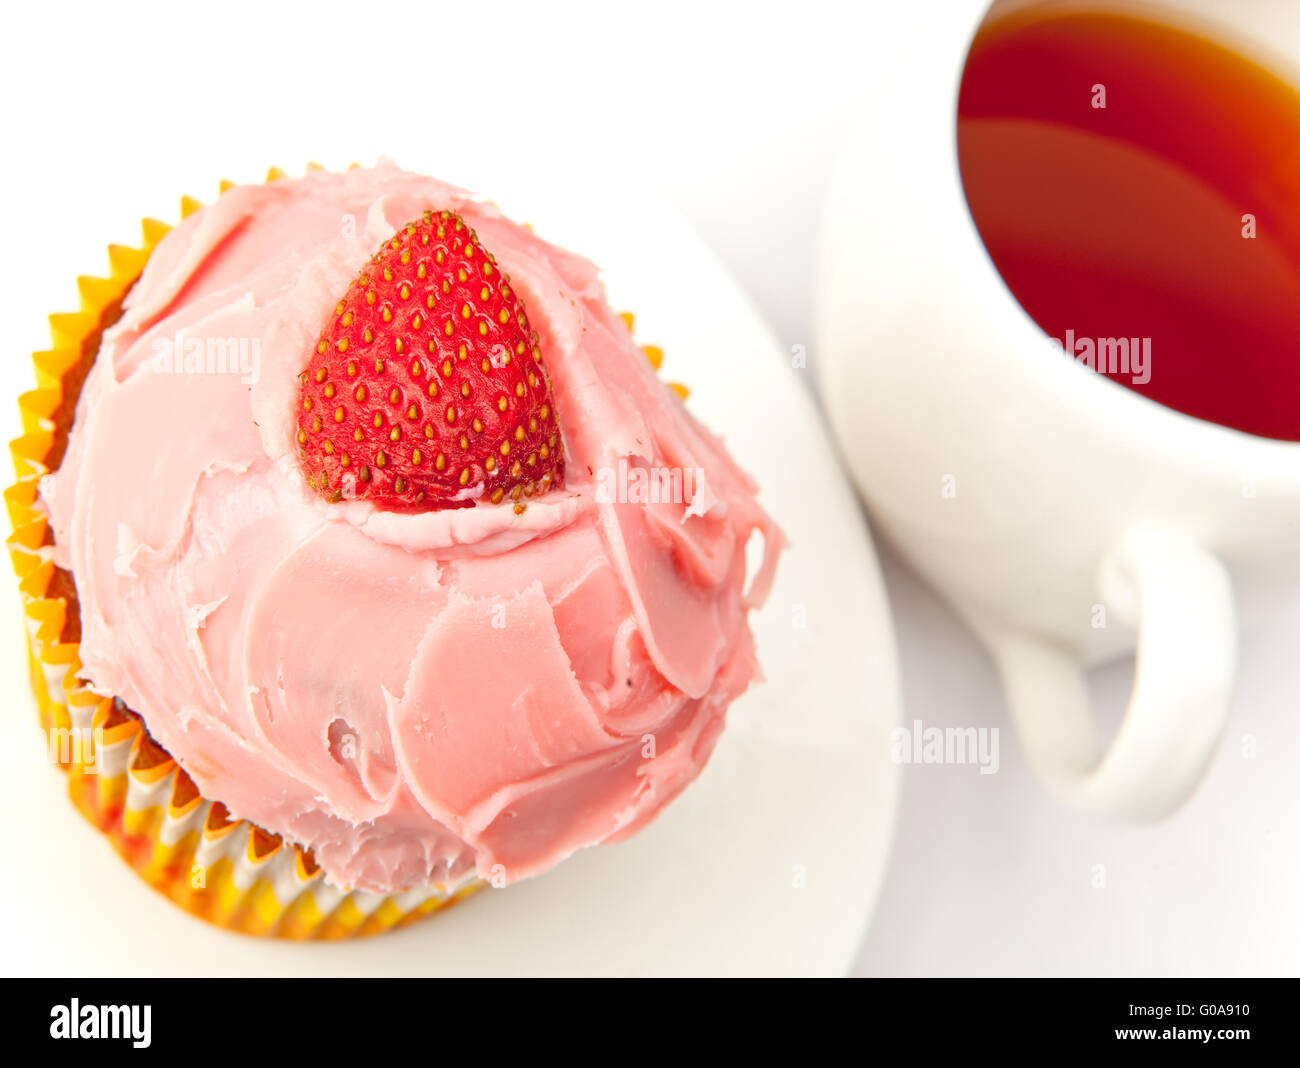 Gâteau aux fruits avec une fraise et une tasse de thé Banque D'Images